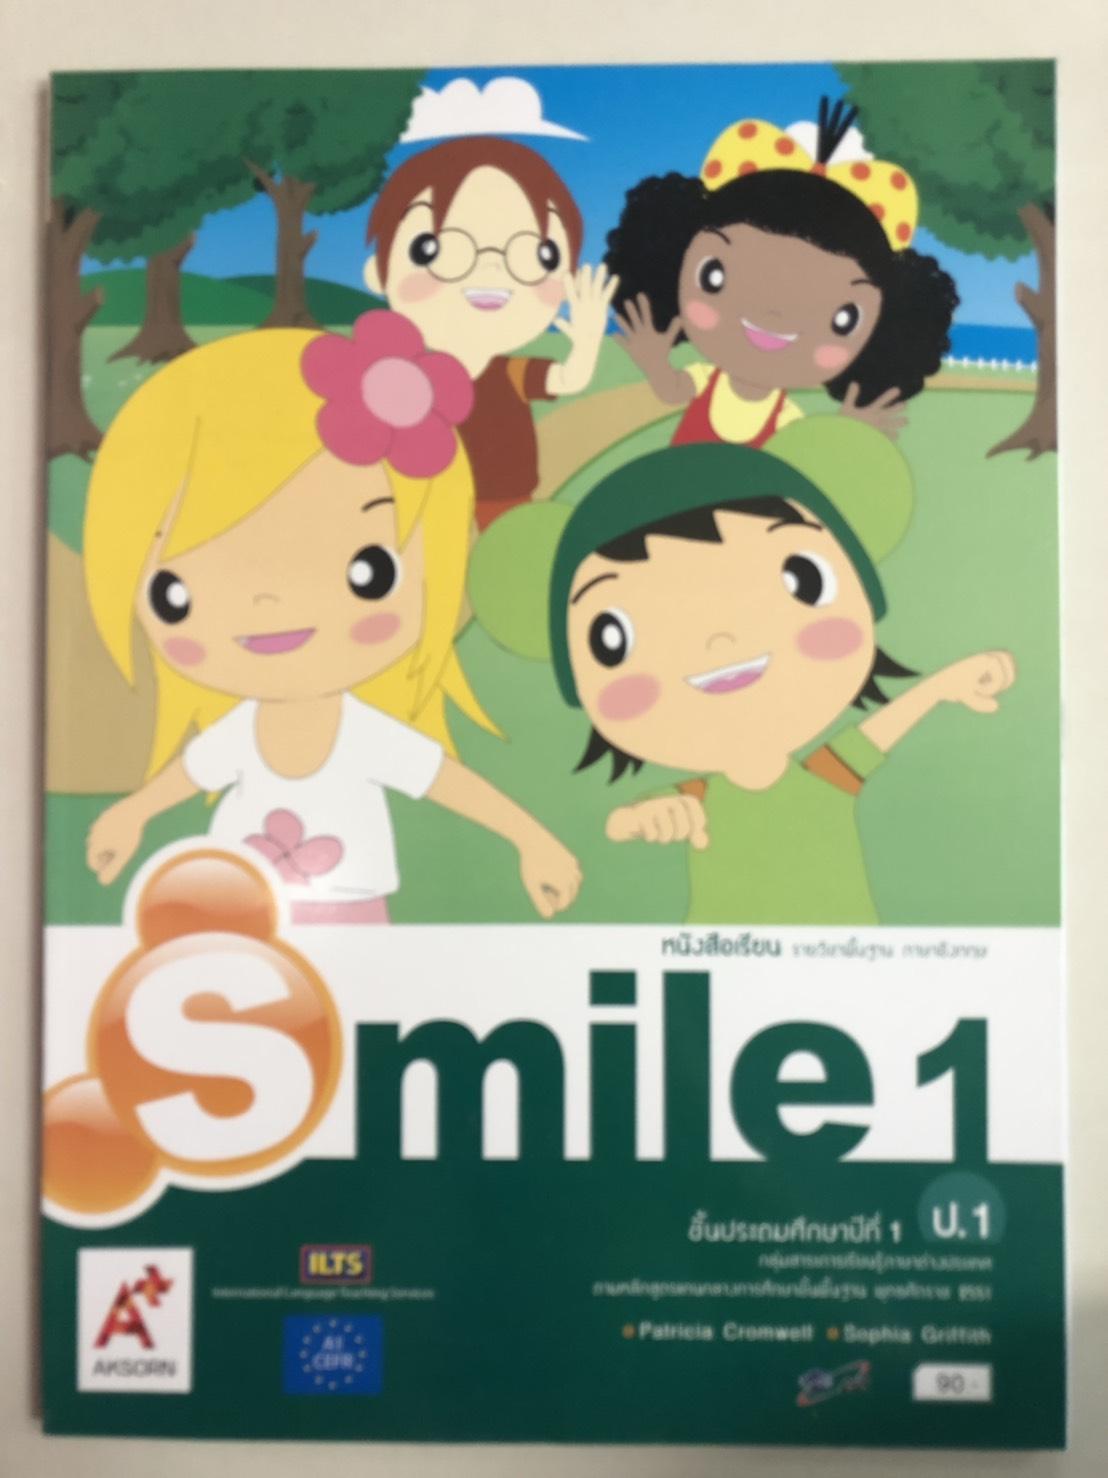 หนังสือเรียนภาษาอังกฤษ Smile 1 ชั้น ป1 อจท